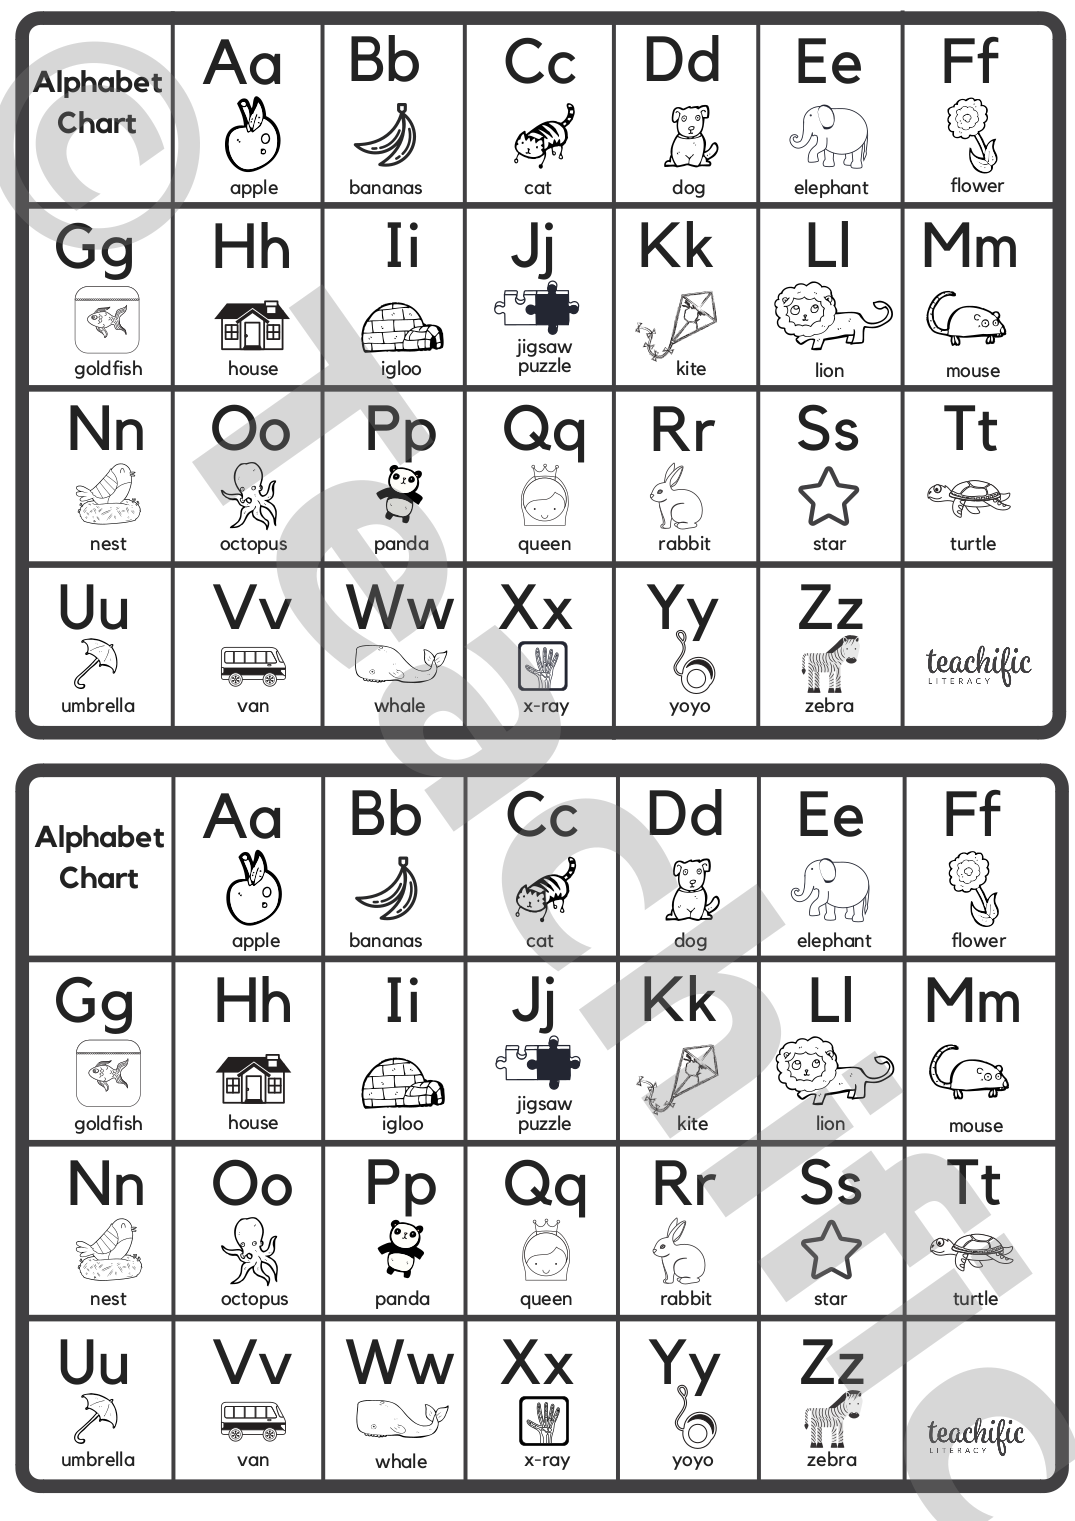 Alphabet Charts: Illustrated - Medium | Teachific